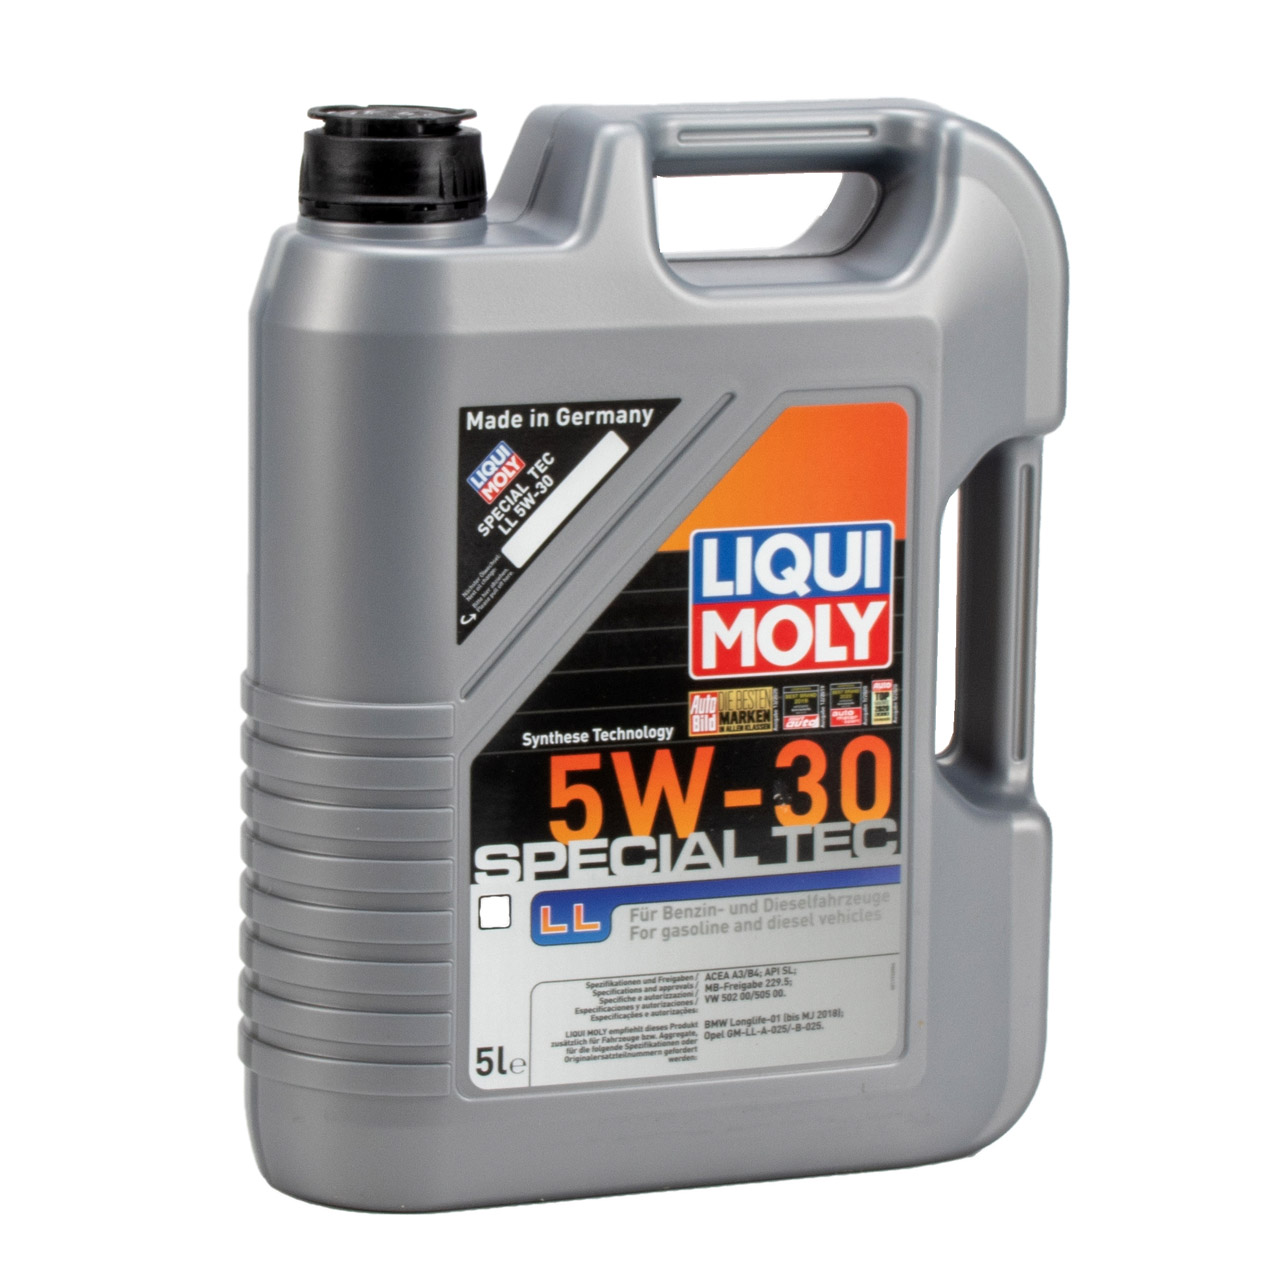 10L 10 Liter LIQUI MOLY Motoröl Öl SPECIAL TEC LL 5W30 MB 229.5 VW 502/505.00